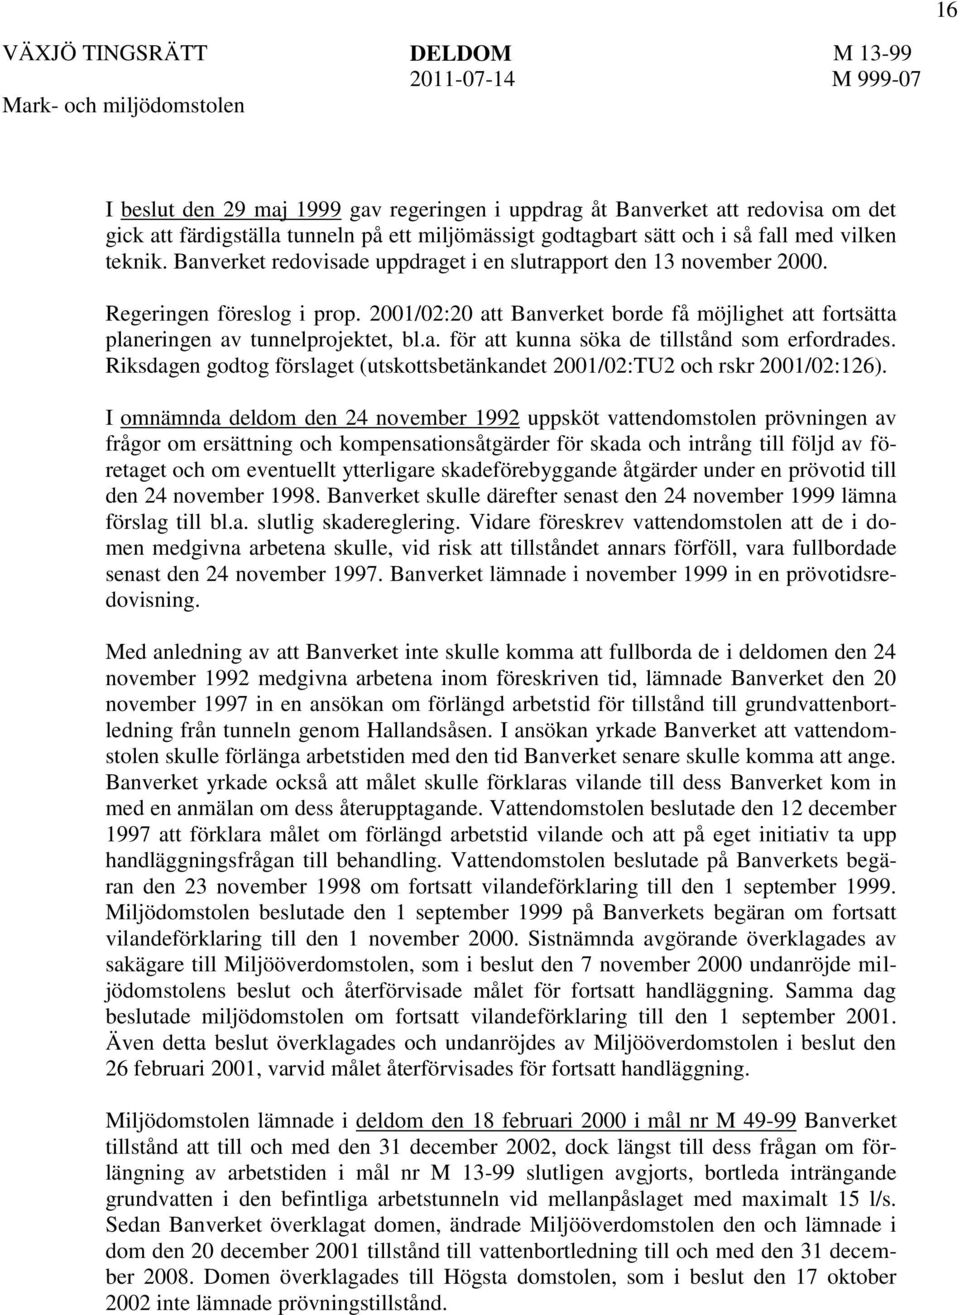 Riksdagen godtog förslaget (utskottsbetänkandet 2001/02:TU2 och rskr 2001/02:126).